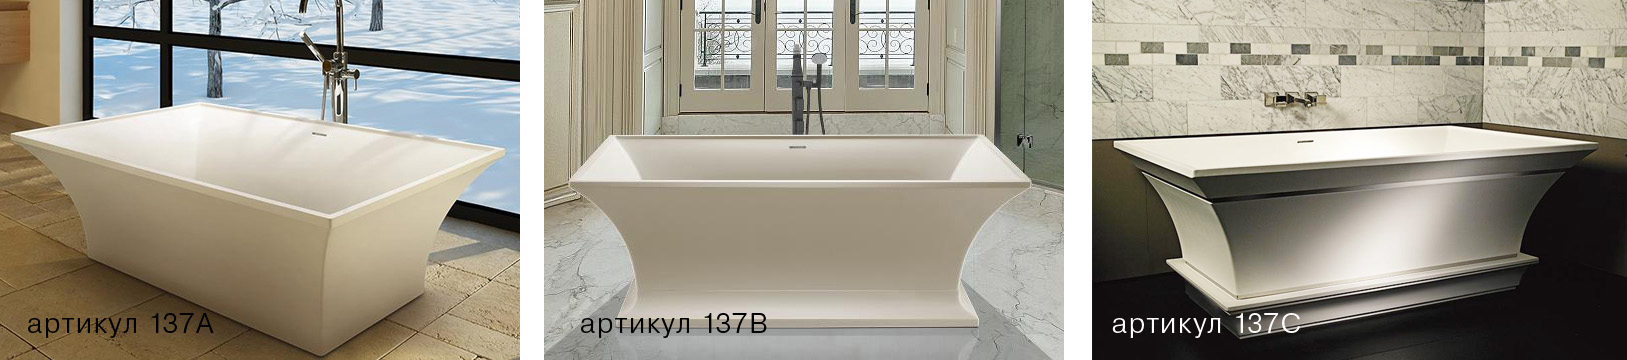 Intarcia роскошная свободностоящая скульптурная ванна из минерального литья в современном классическом стиле mtibath